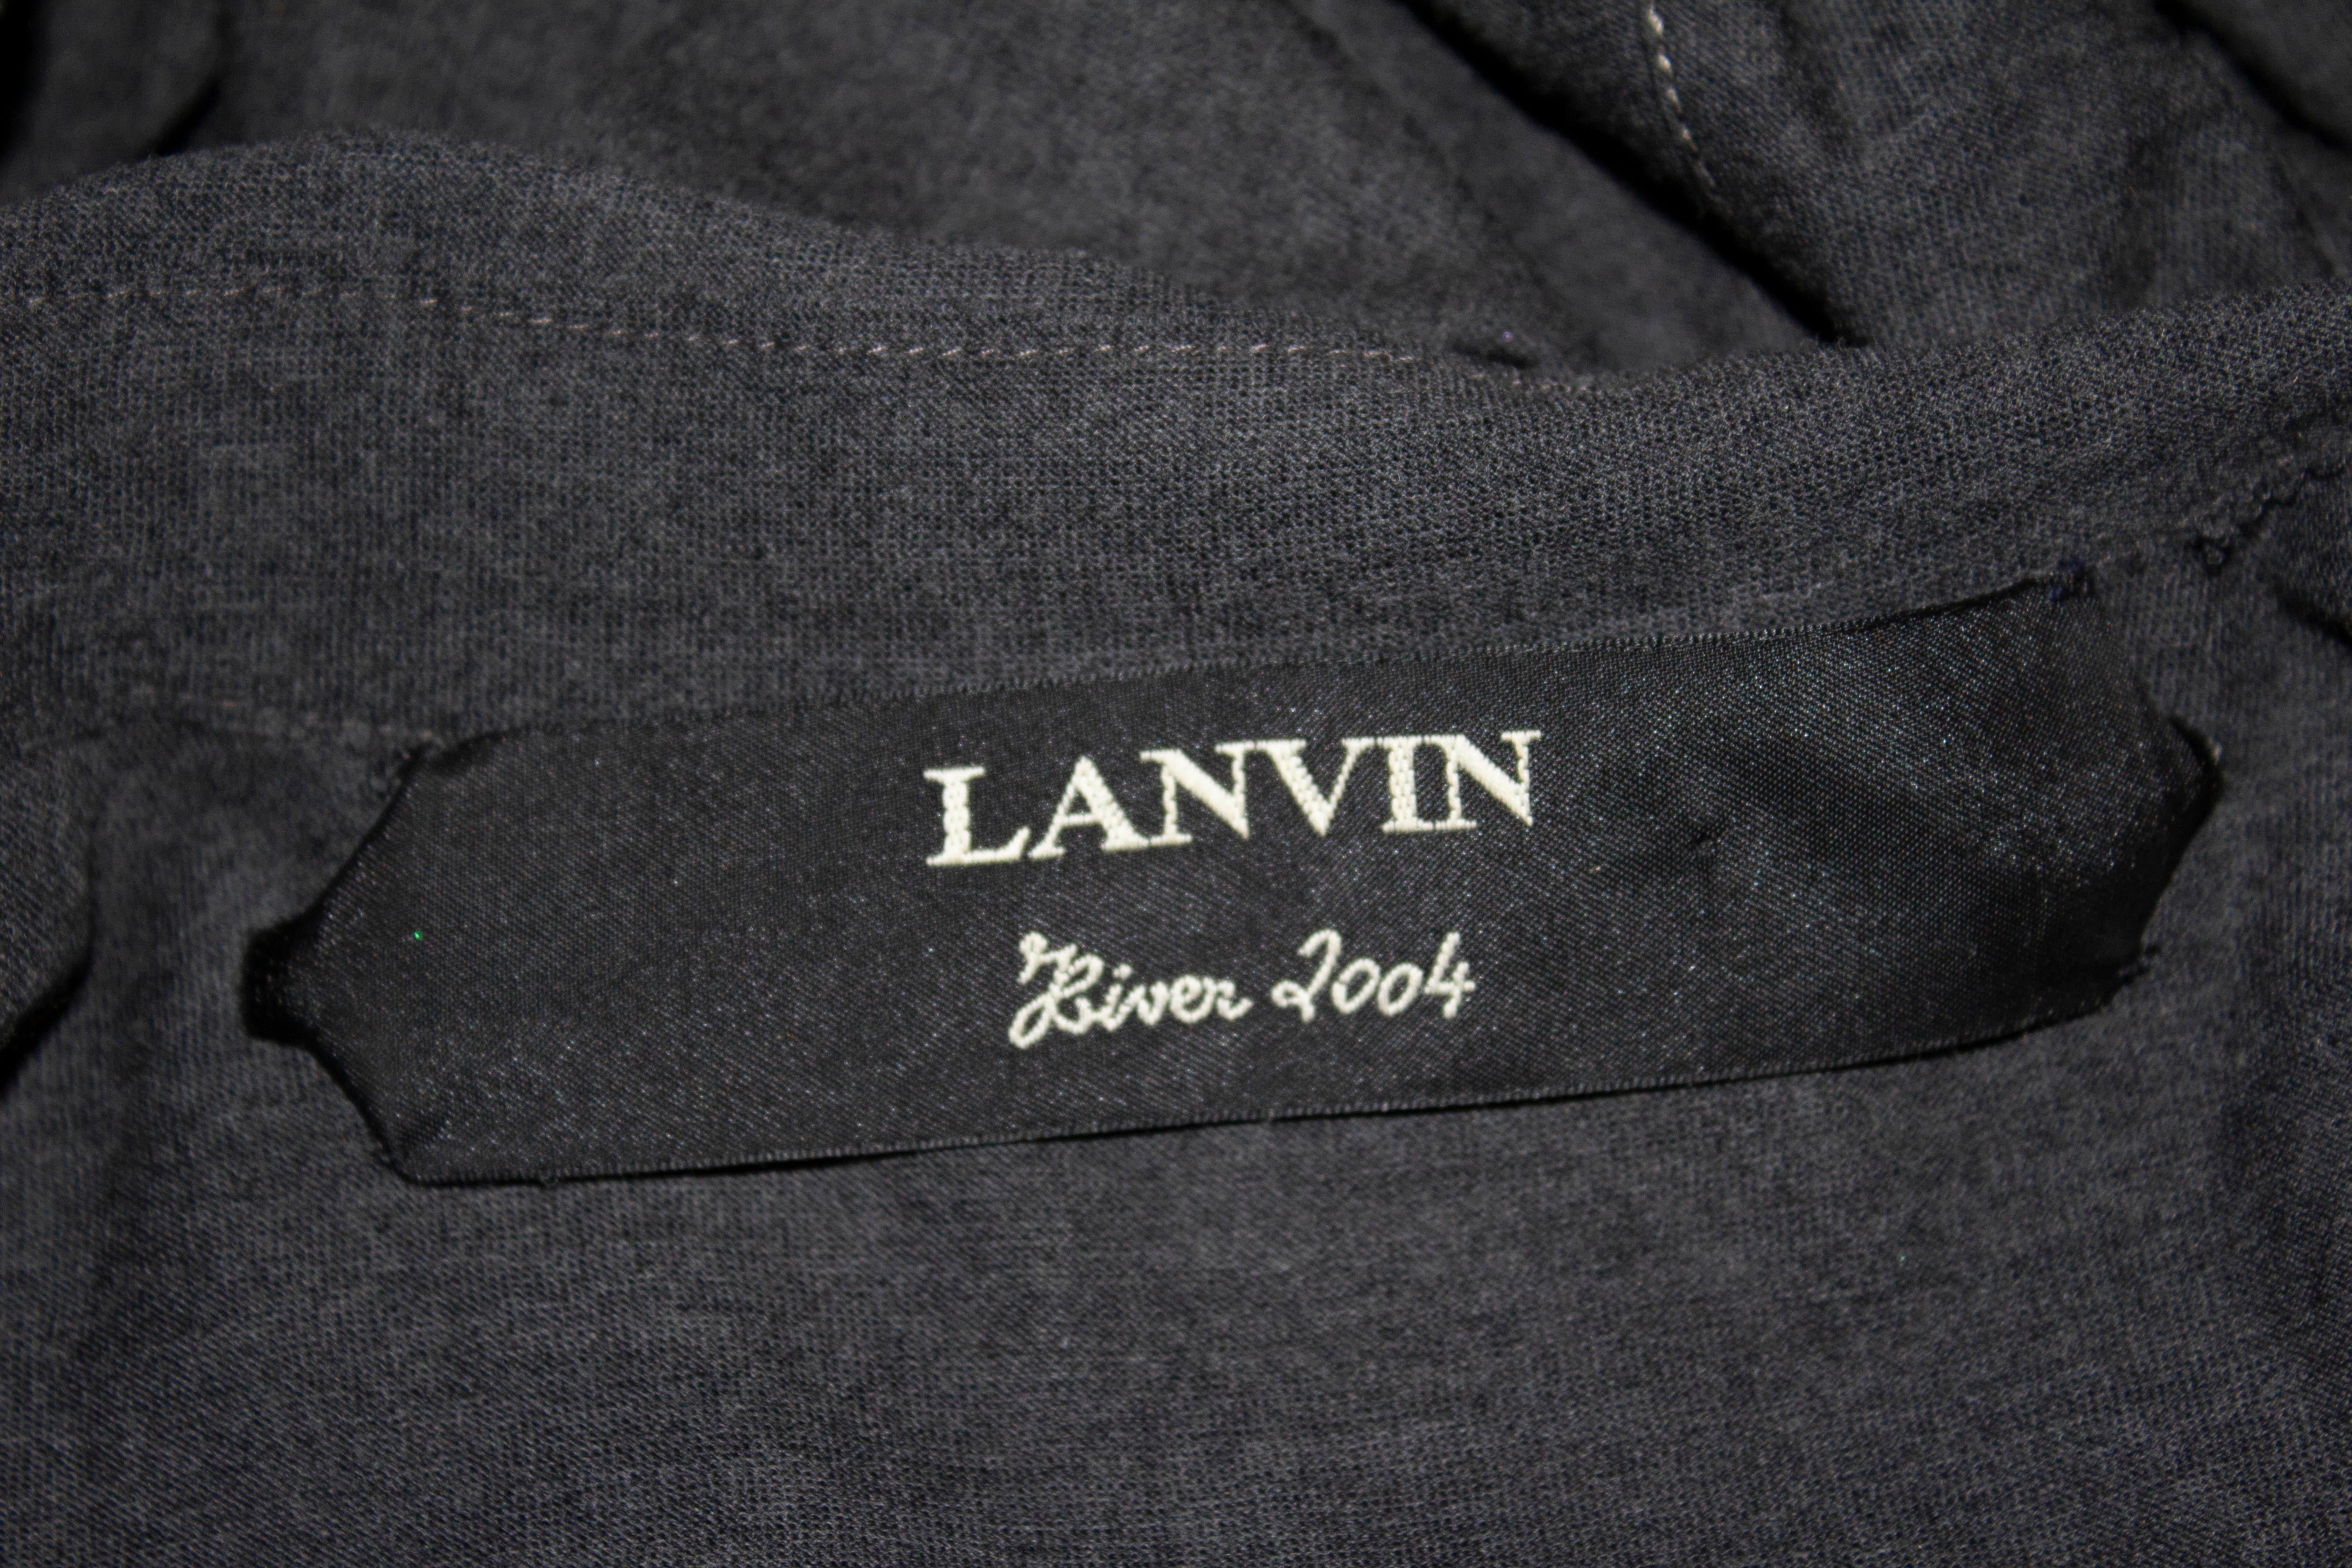 Une robe chemise chic en laine grise par Lanvin, hiver 2004. La robe se ferme sur le devant avec une ouverture à boutons-pression, possède une ceinture en tissu et des décorations sur le devant et le dos. 
Taille 38, Poitrine 38'', longueur 40''